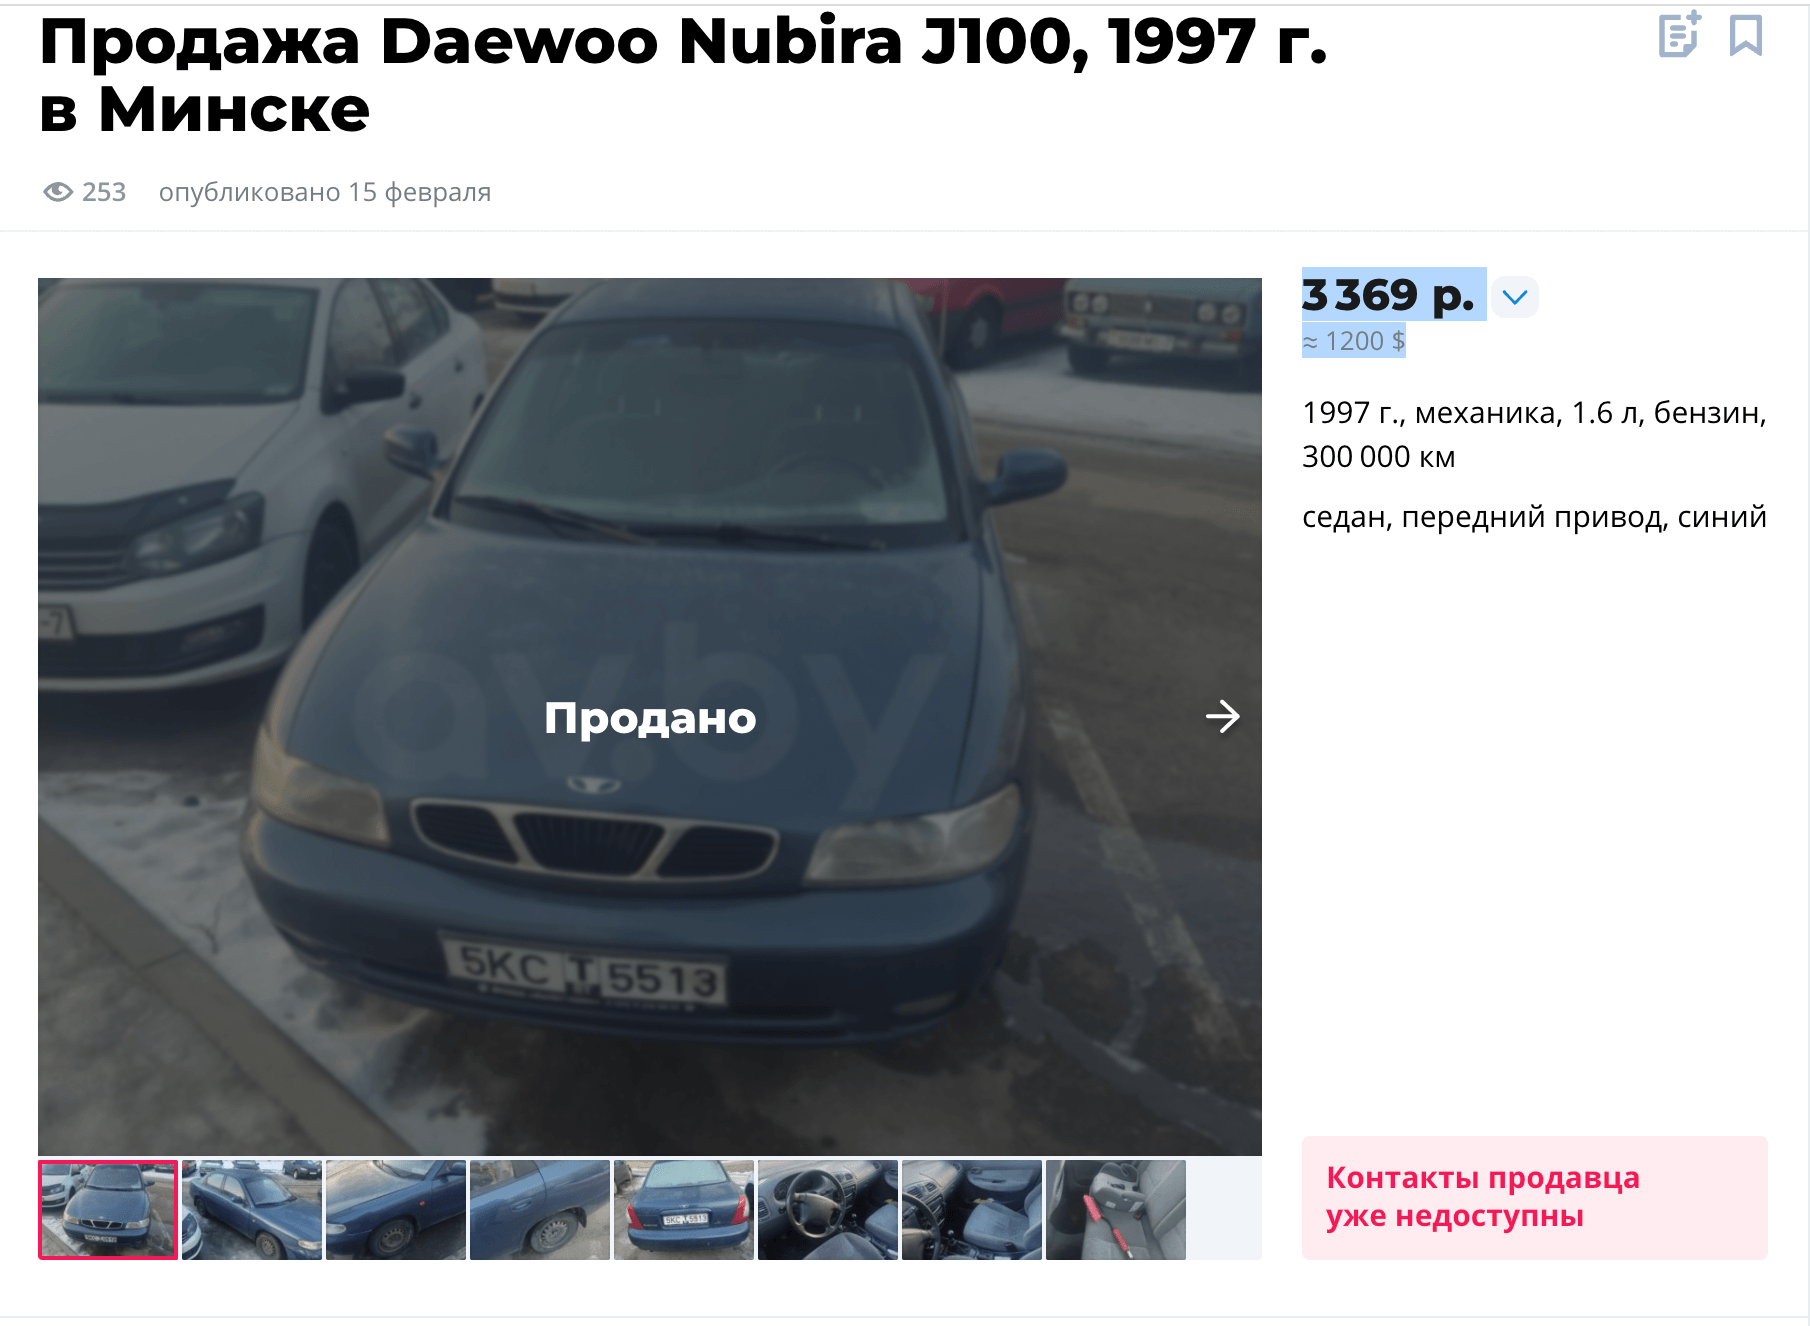 Daewoo Nubira из ориентировок была продана за $1200